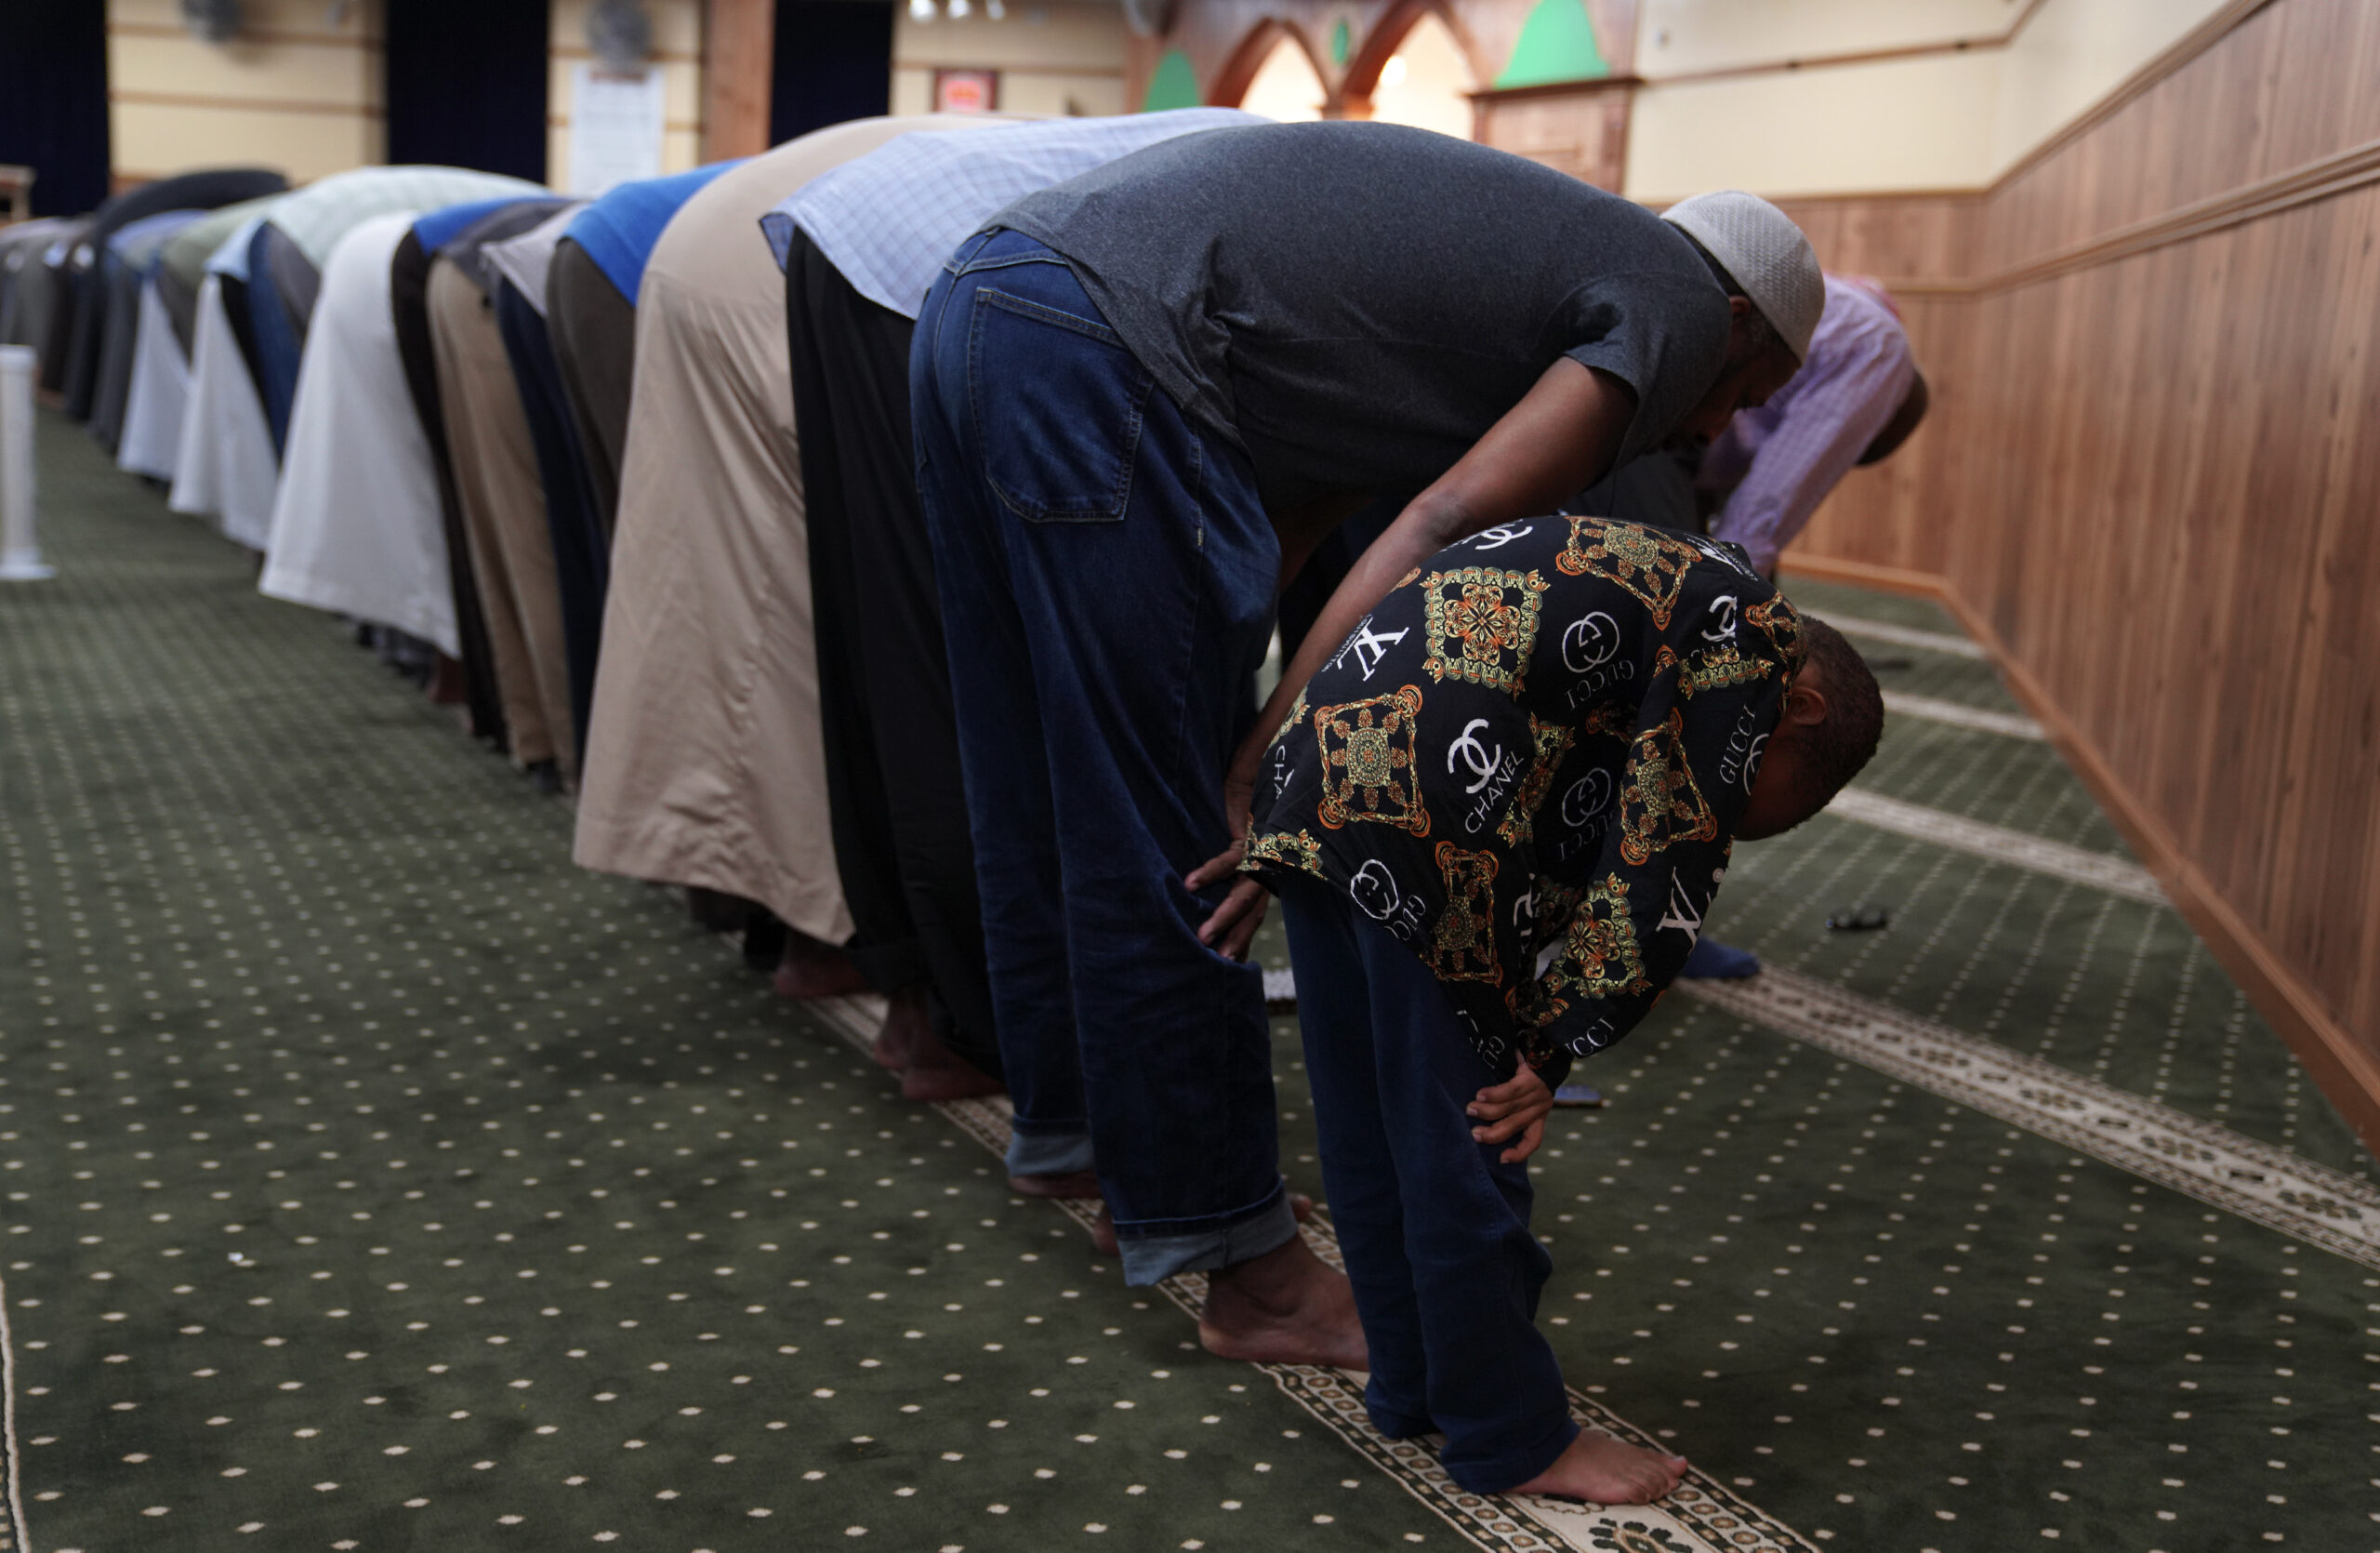 Members of the Abubakar As-Saddique Islamic Center pray.